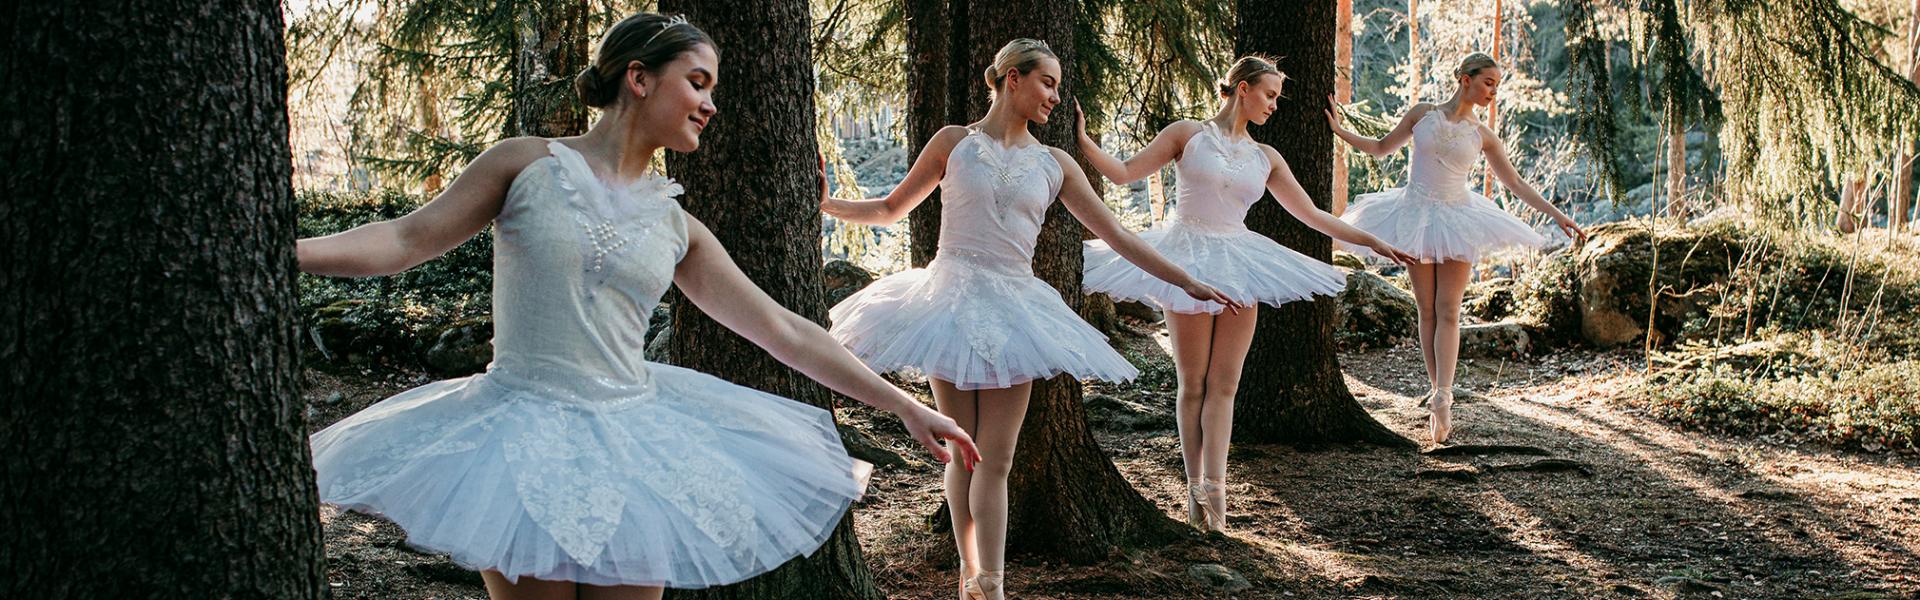 Tanssistudio Jami Oy sai Etelä-Karjalan rahaston apurahan vuonna 2020 25-vuotisjuhlavuoden tapahtumien järjestämiseen. Kuva: Jani Kautto